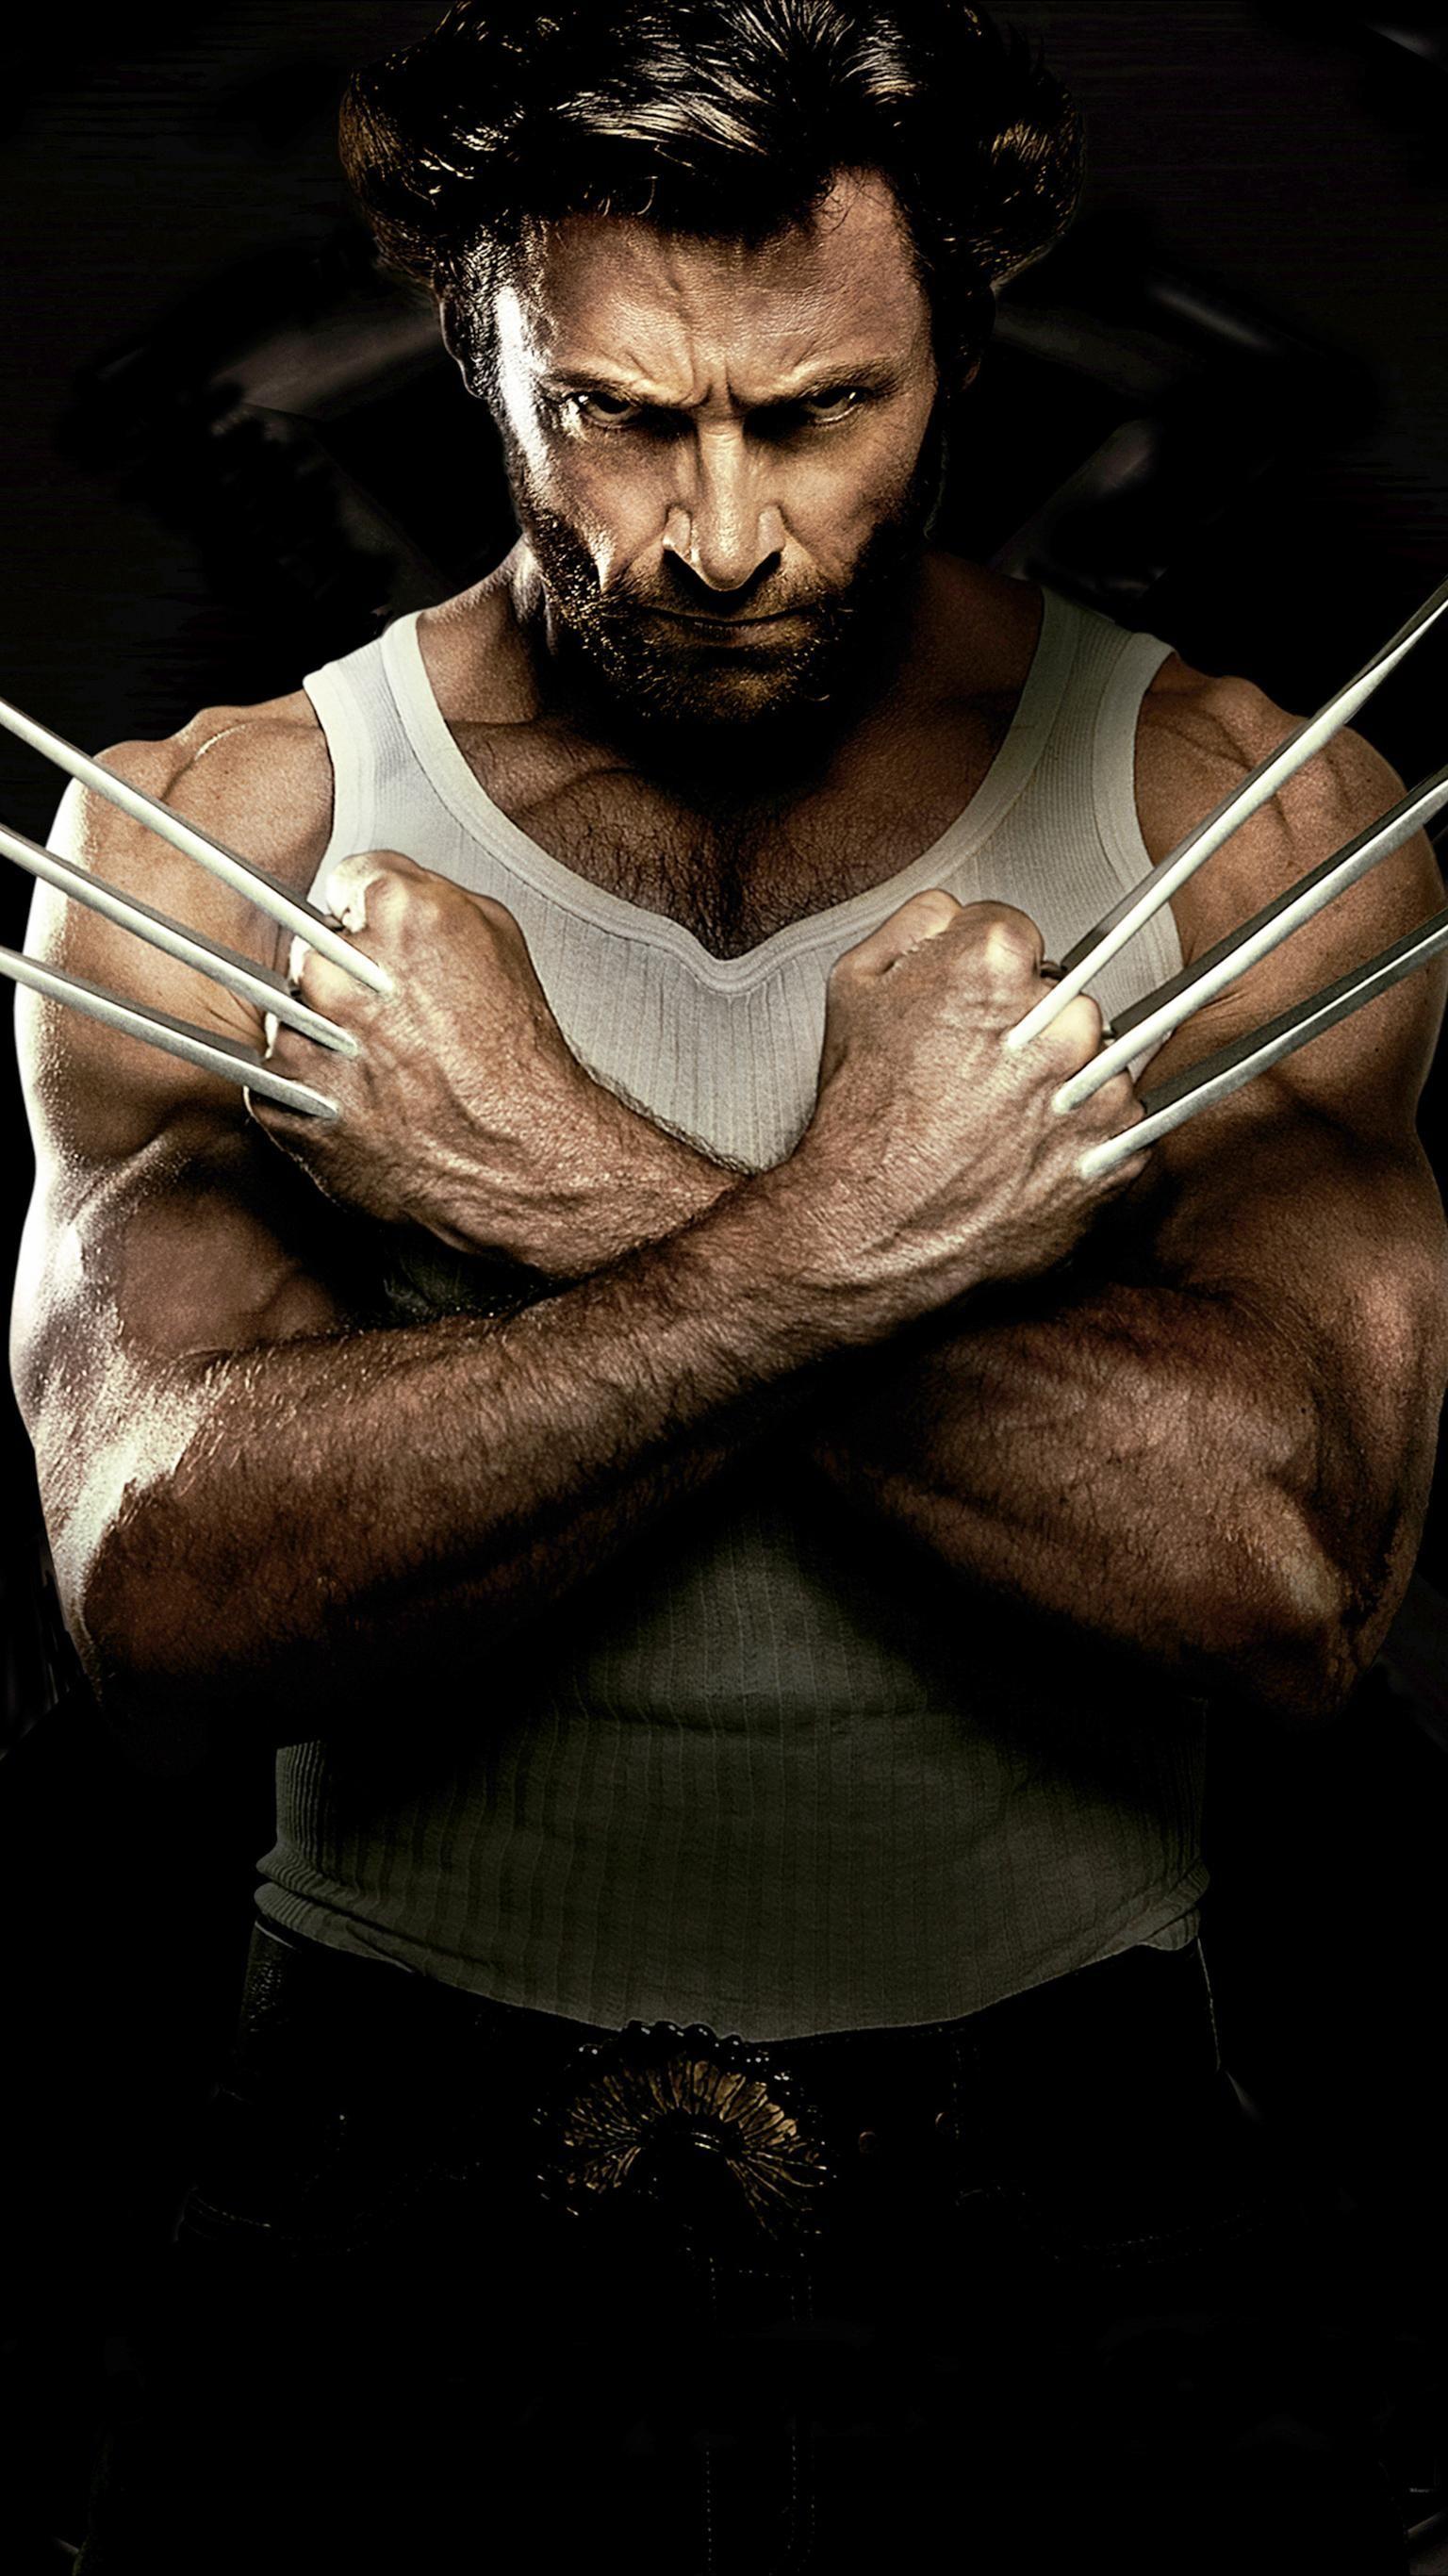 X Men Origins: Wolverine (2009) Phone Wallpaper. Phone Wallpaper